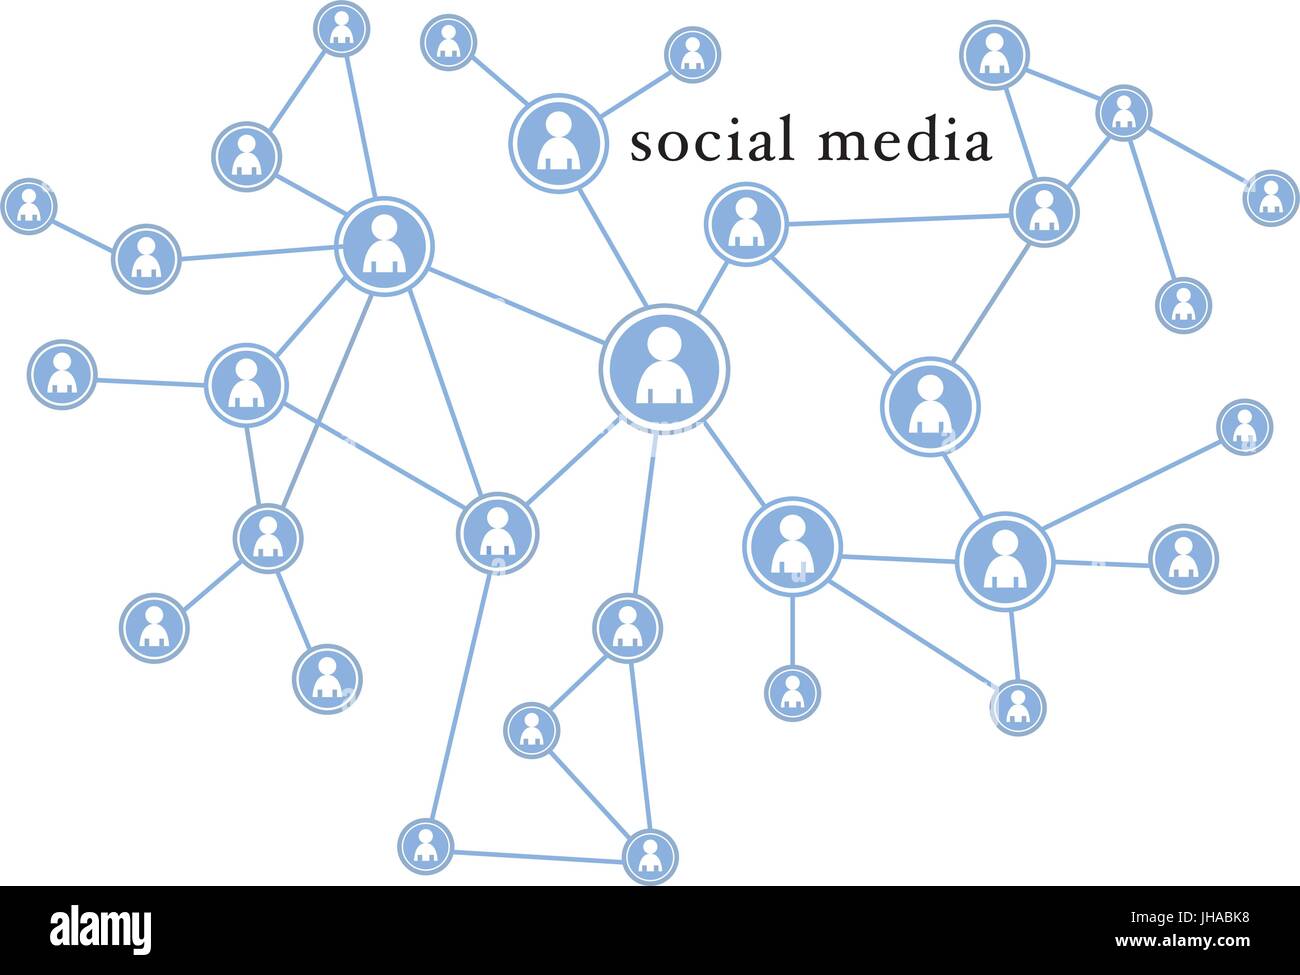 Social Media-Symbole / Illustration - Netzwerk Stock Vektor